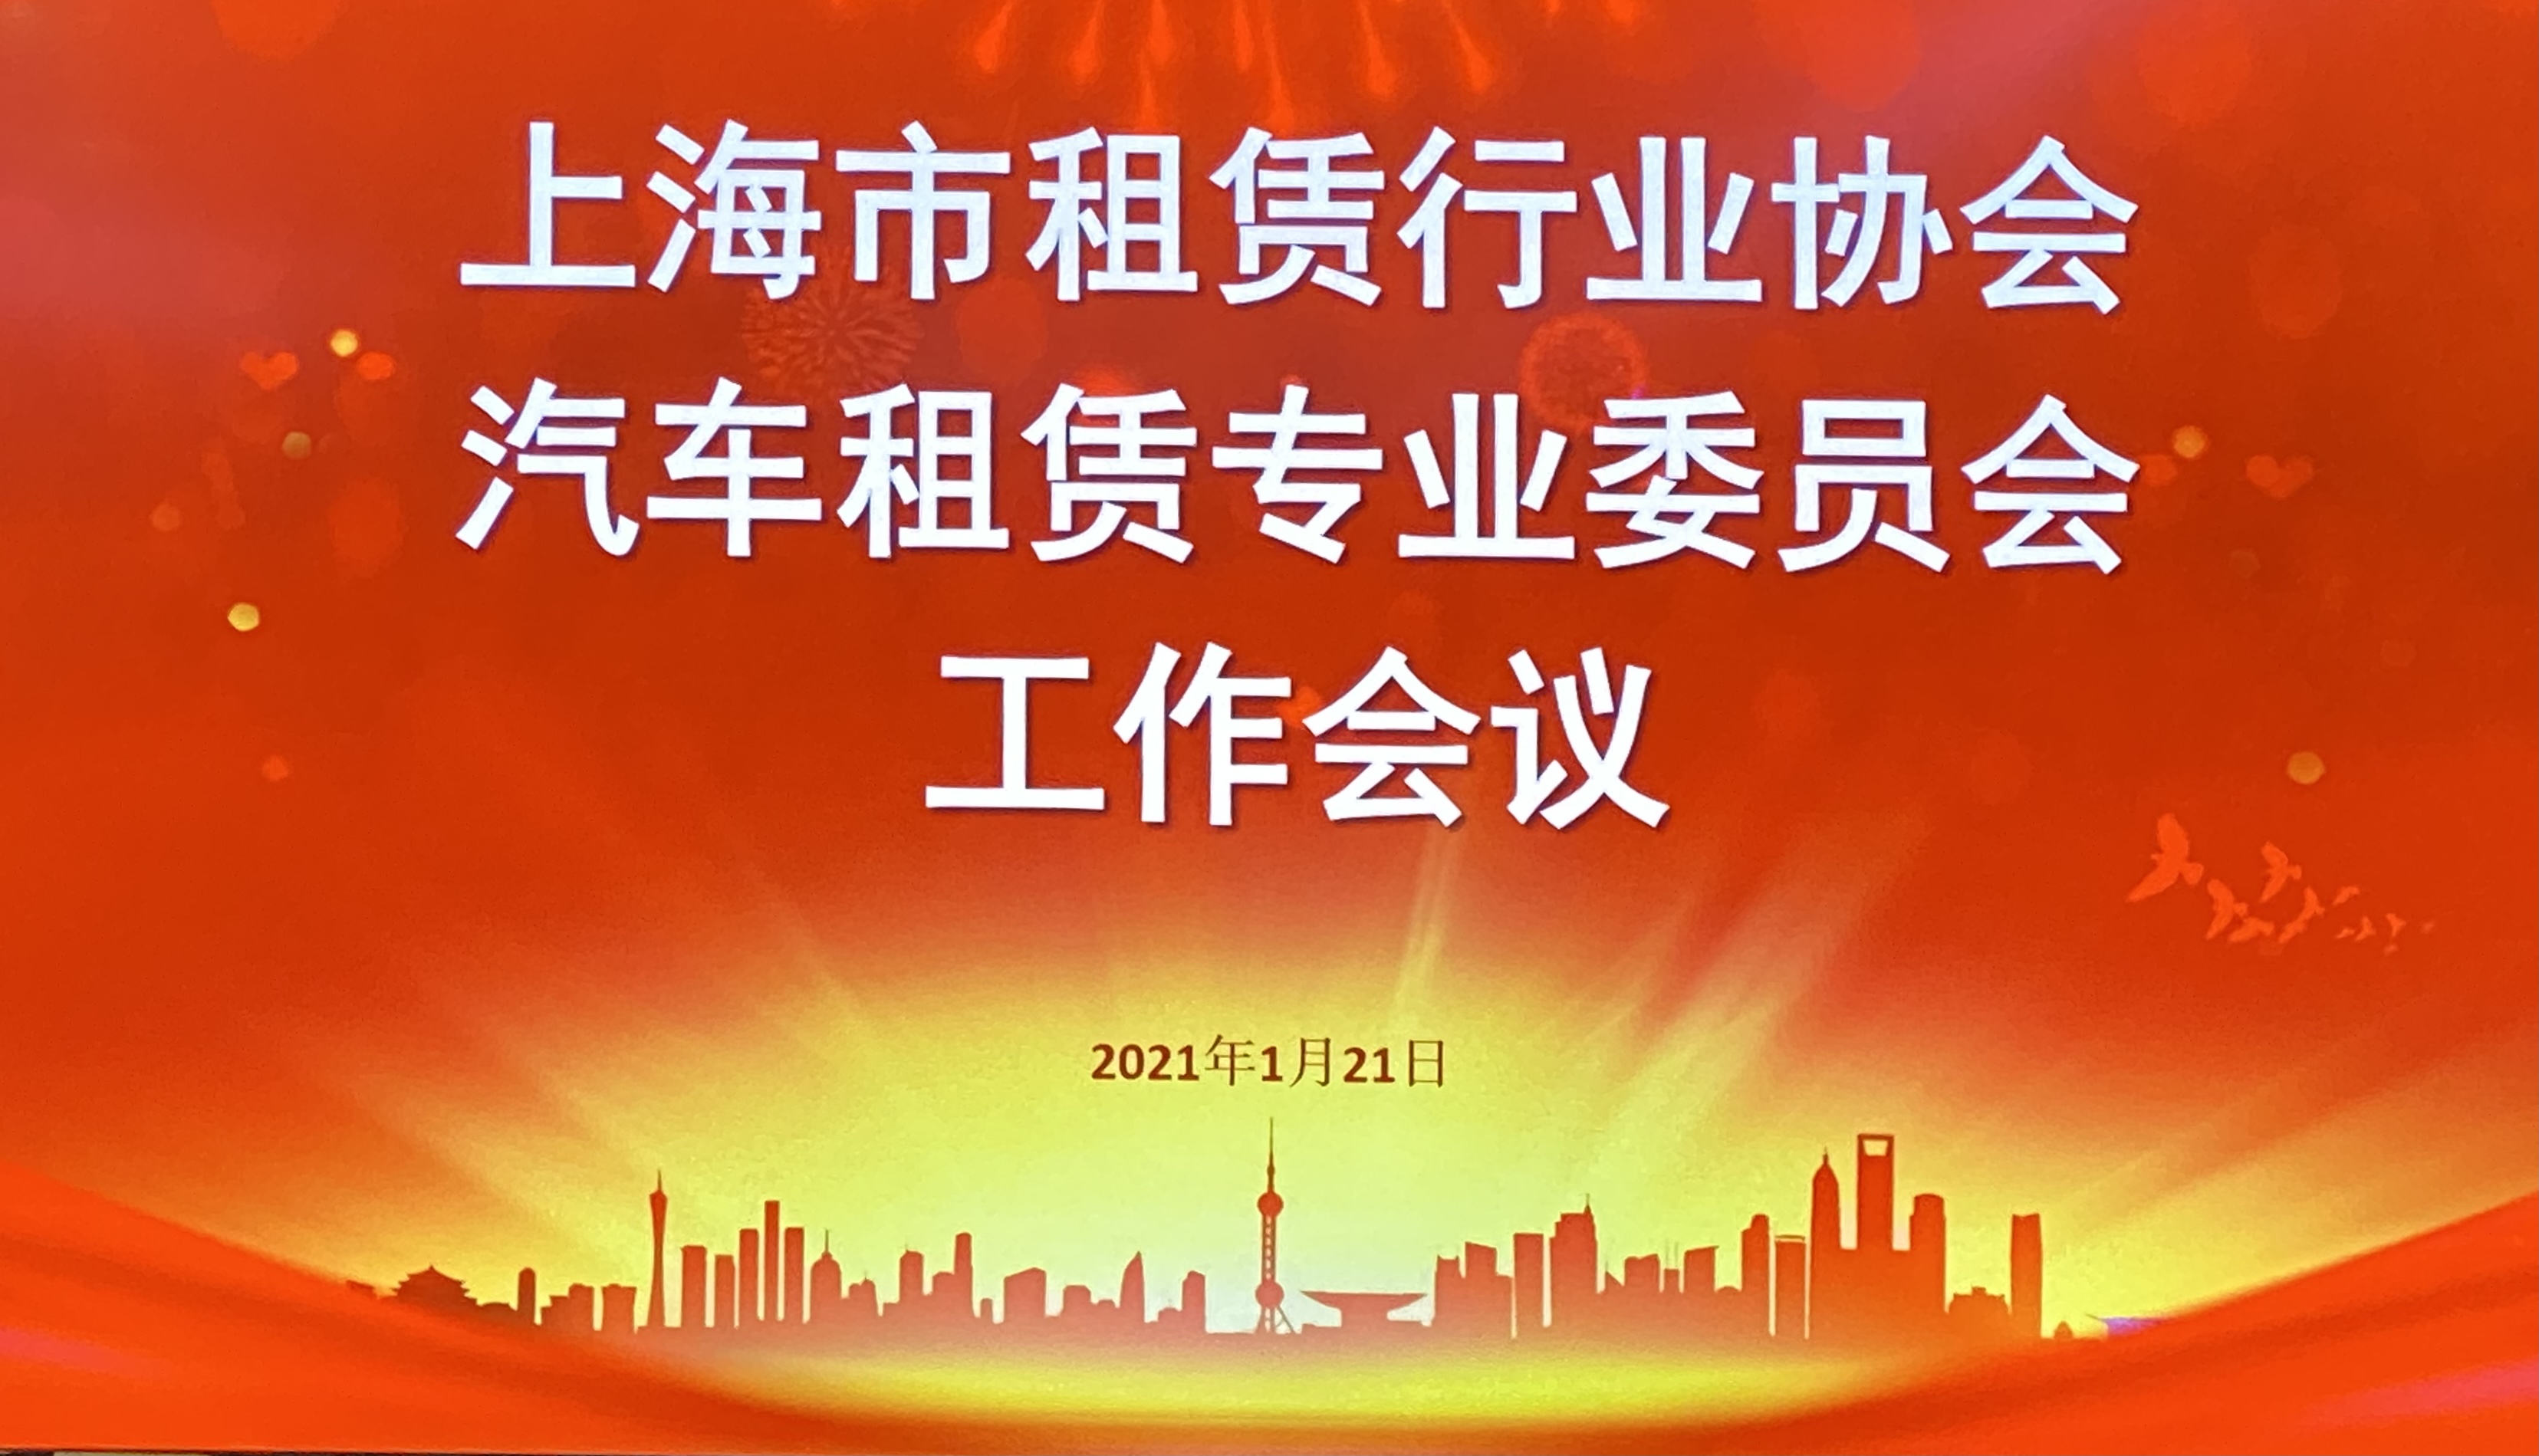 胡列类女士当选为上海市租赁行业协会汽车租赁专业委员会副主任委员